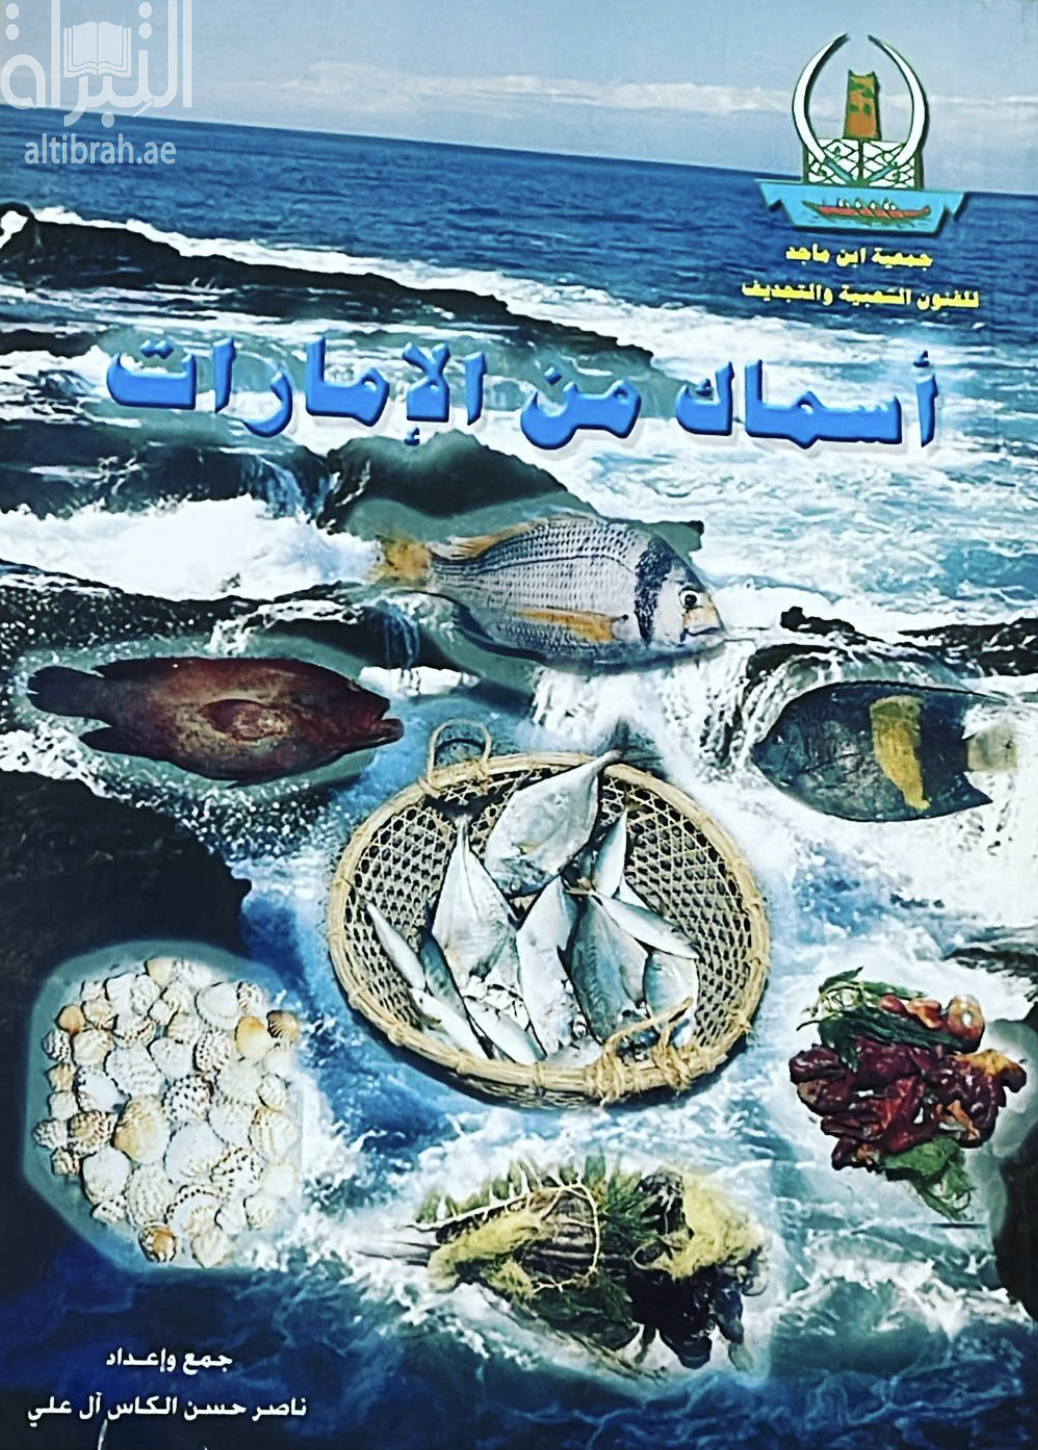 أسماك من الإمارات